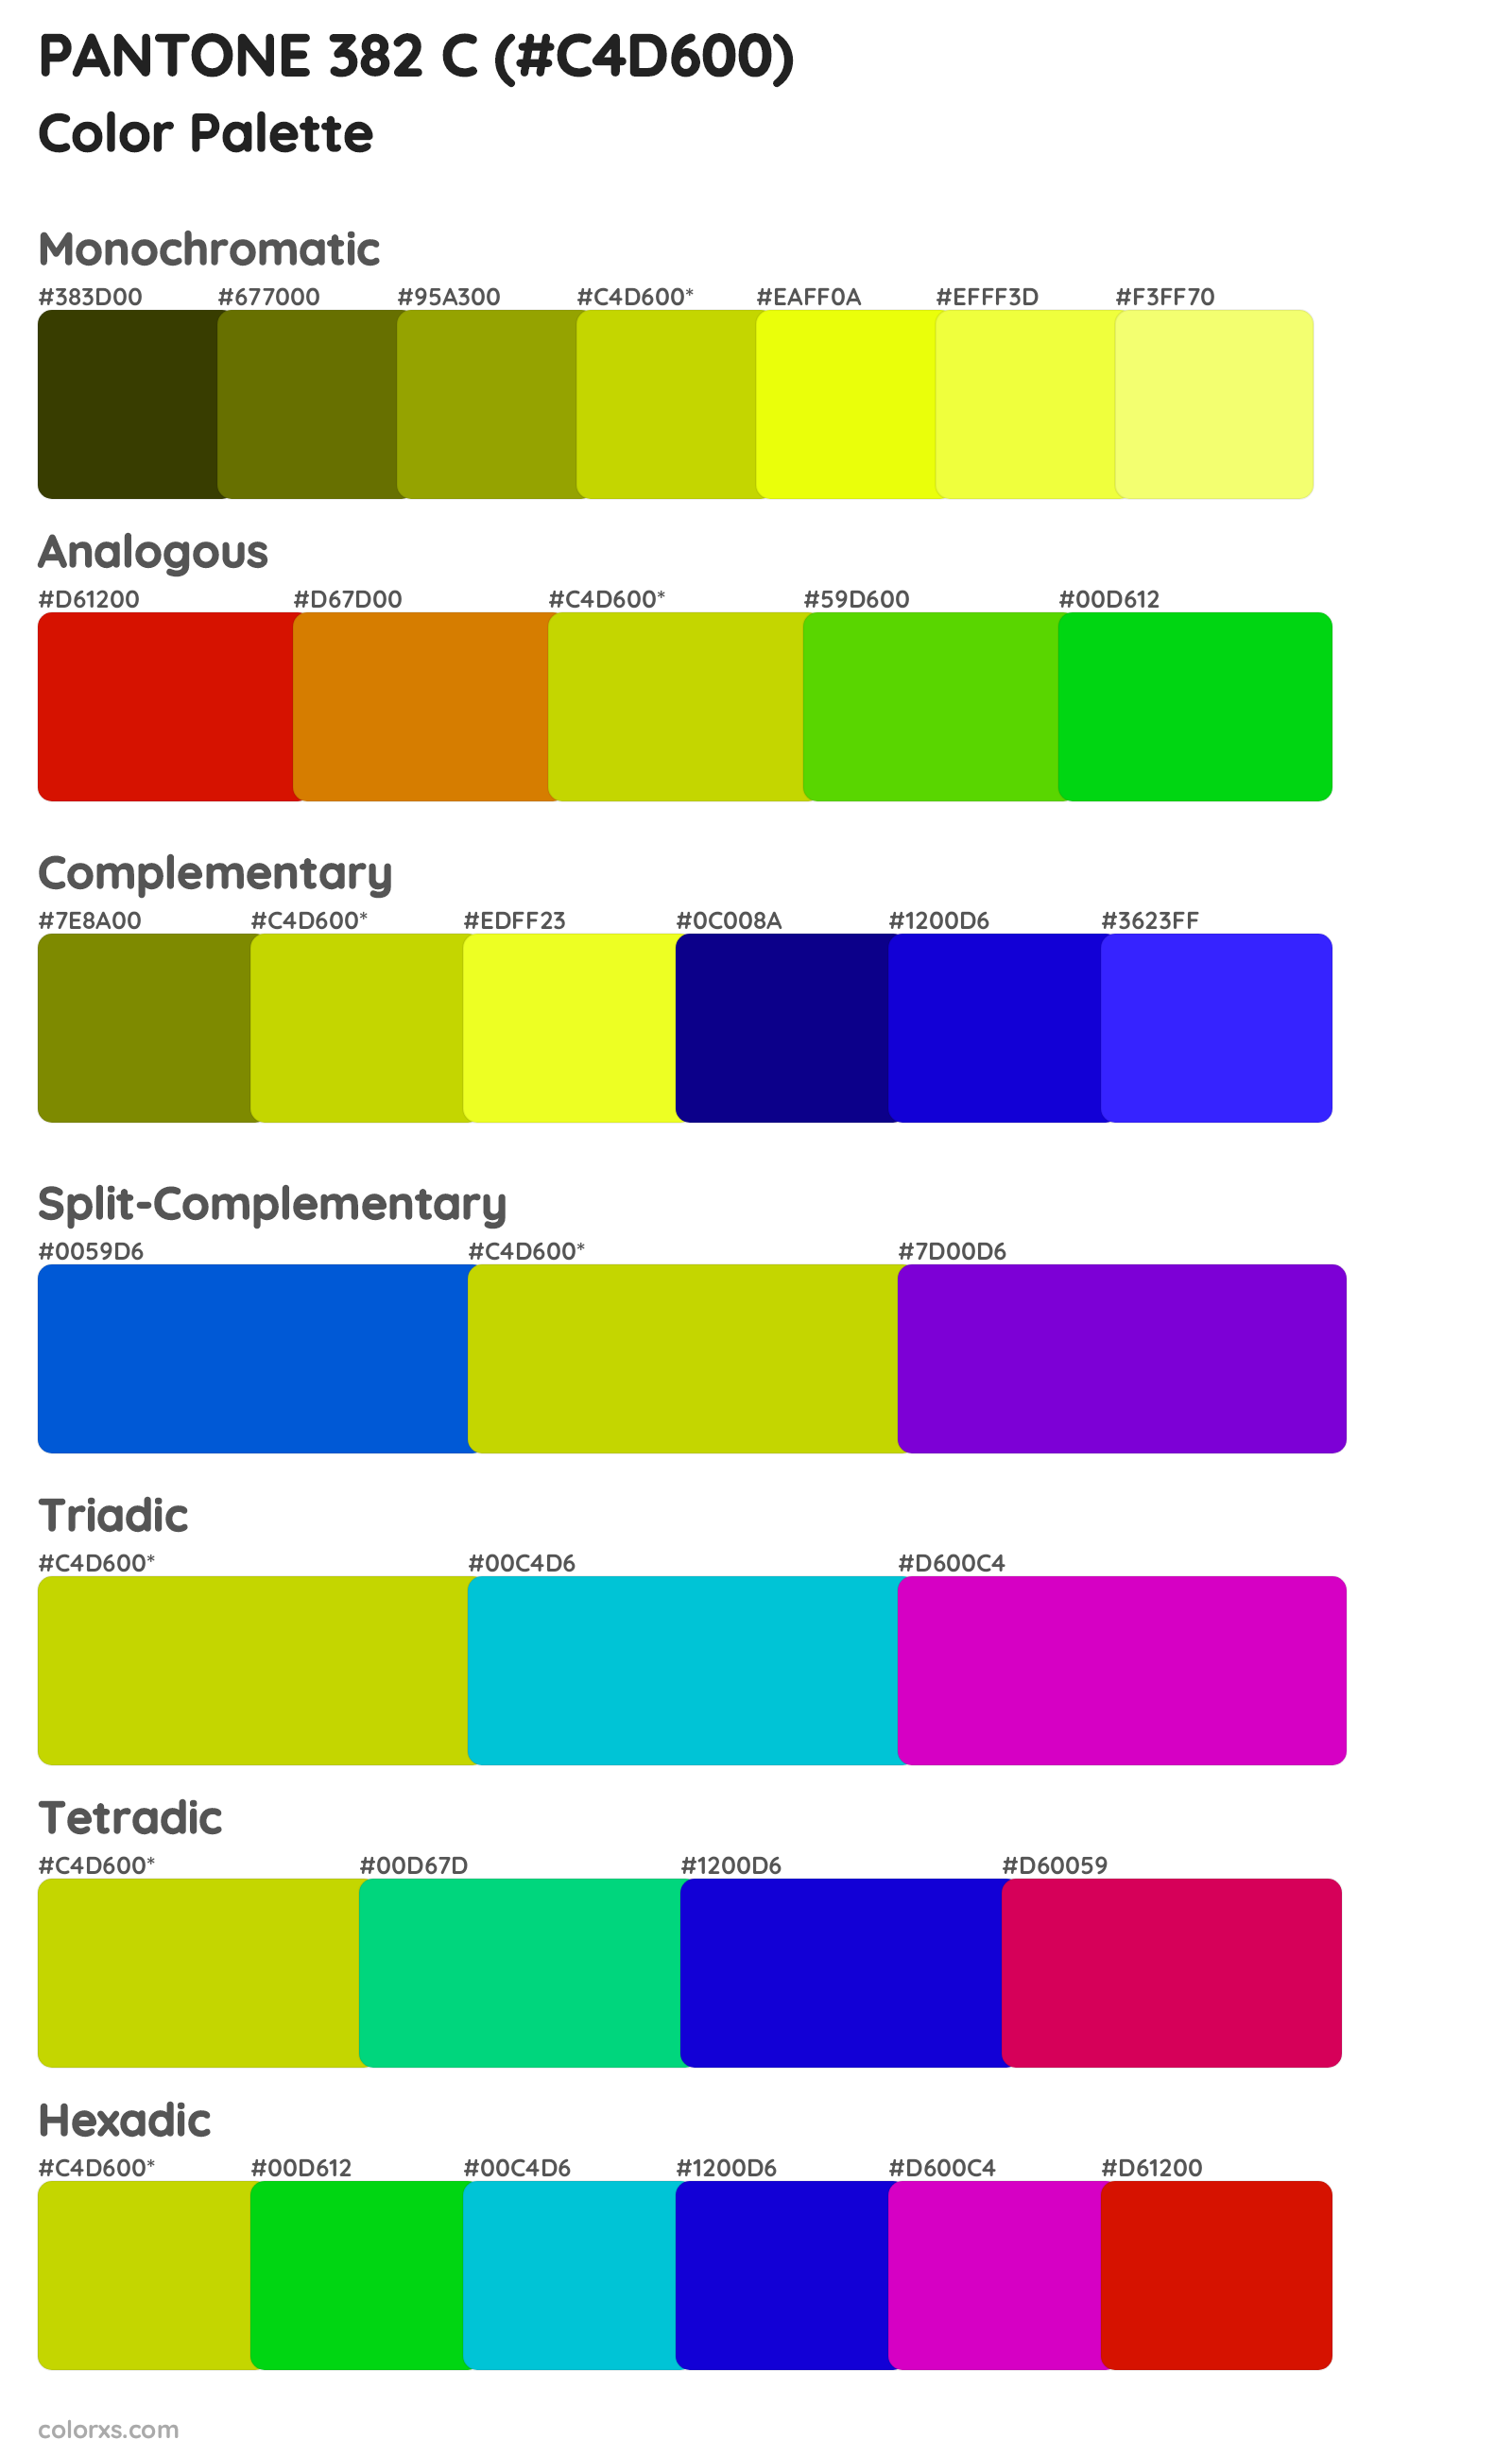 PANTONE 382 C Color Scheme Palettes